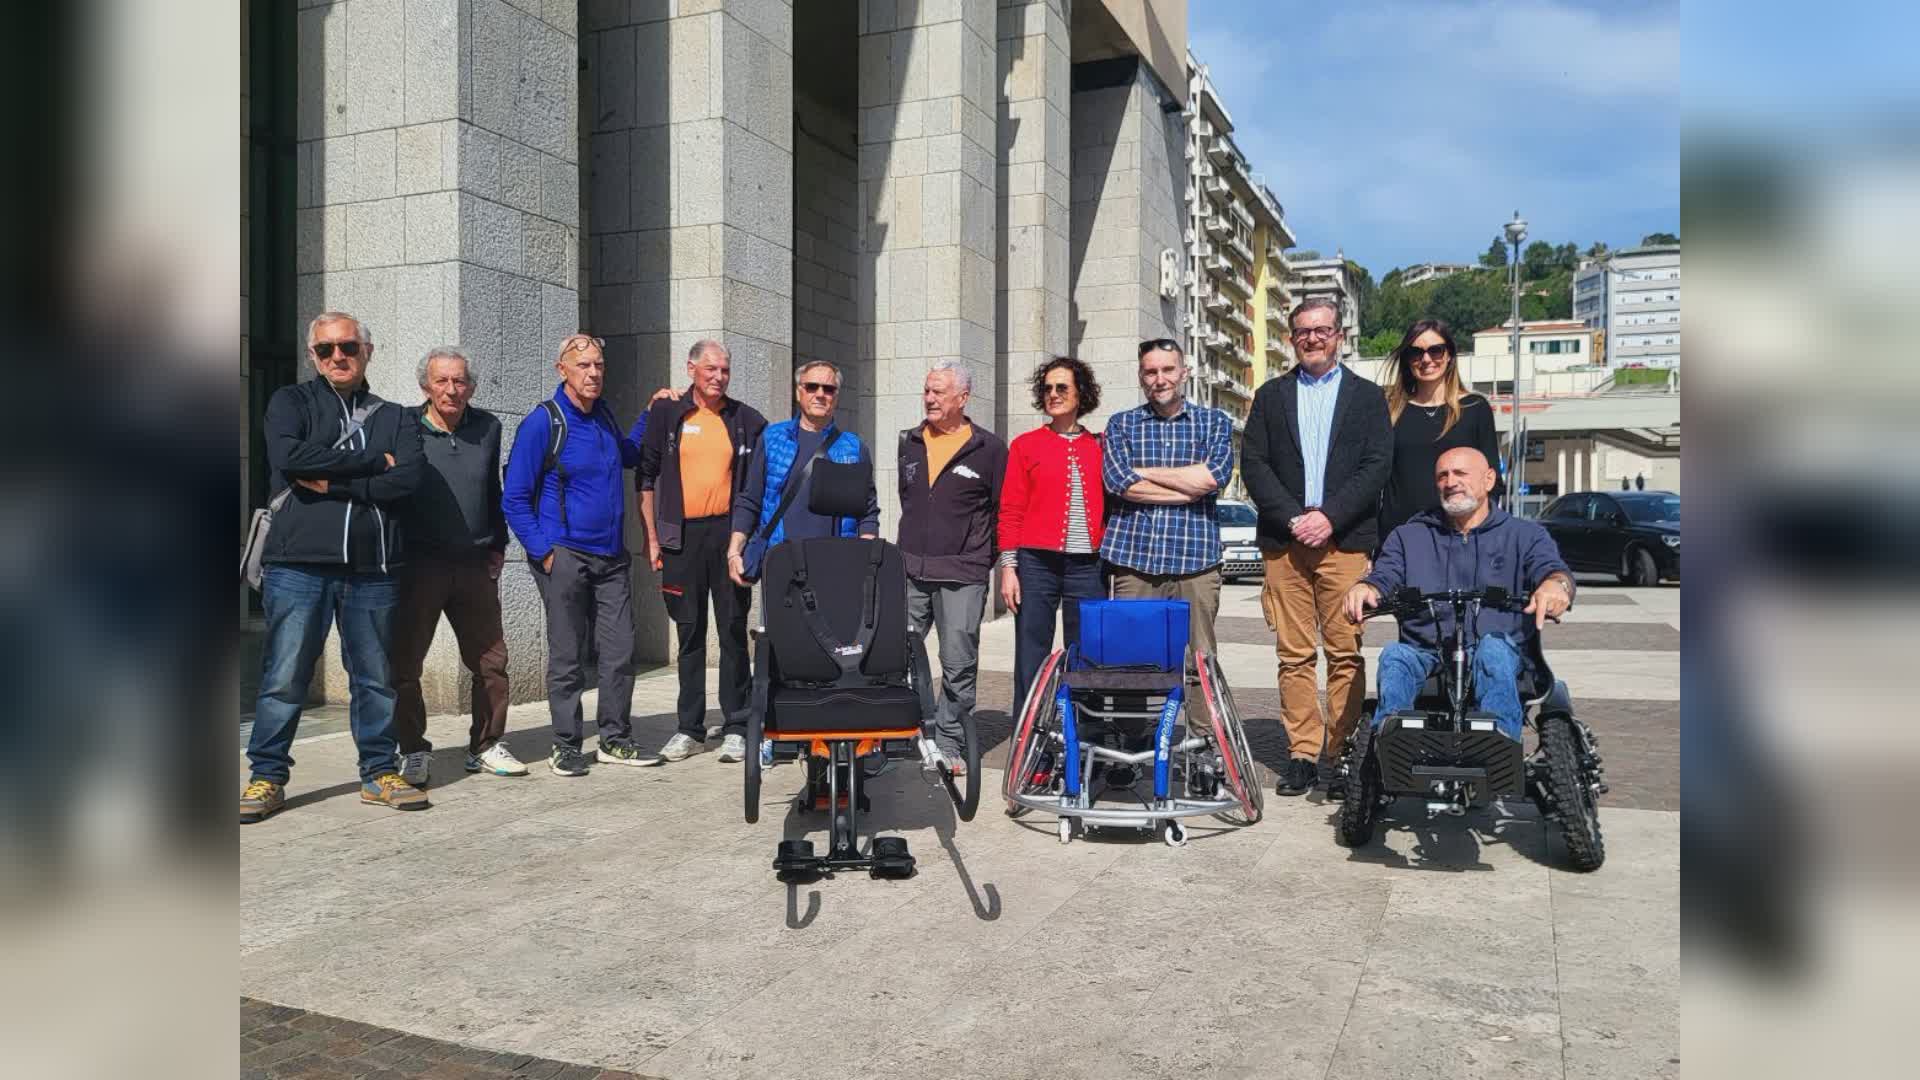 La Spezia: consegnate ad associazioni disabili tre carrozzine speciali per l'attività sportiva